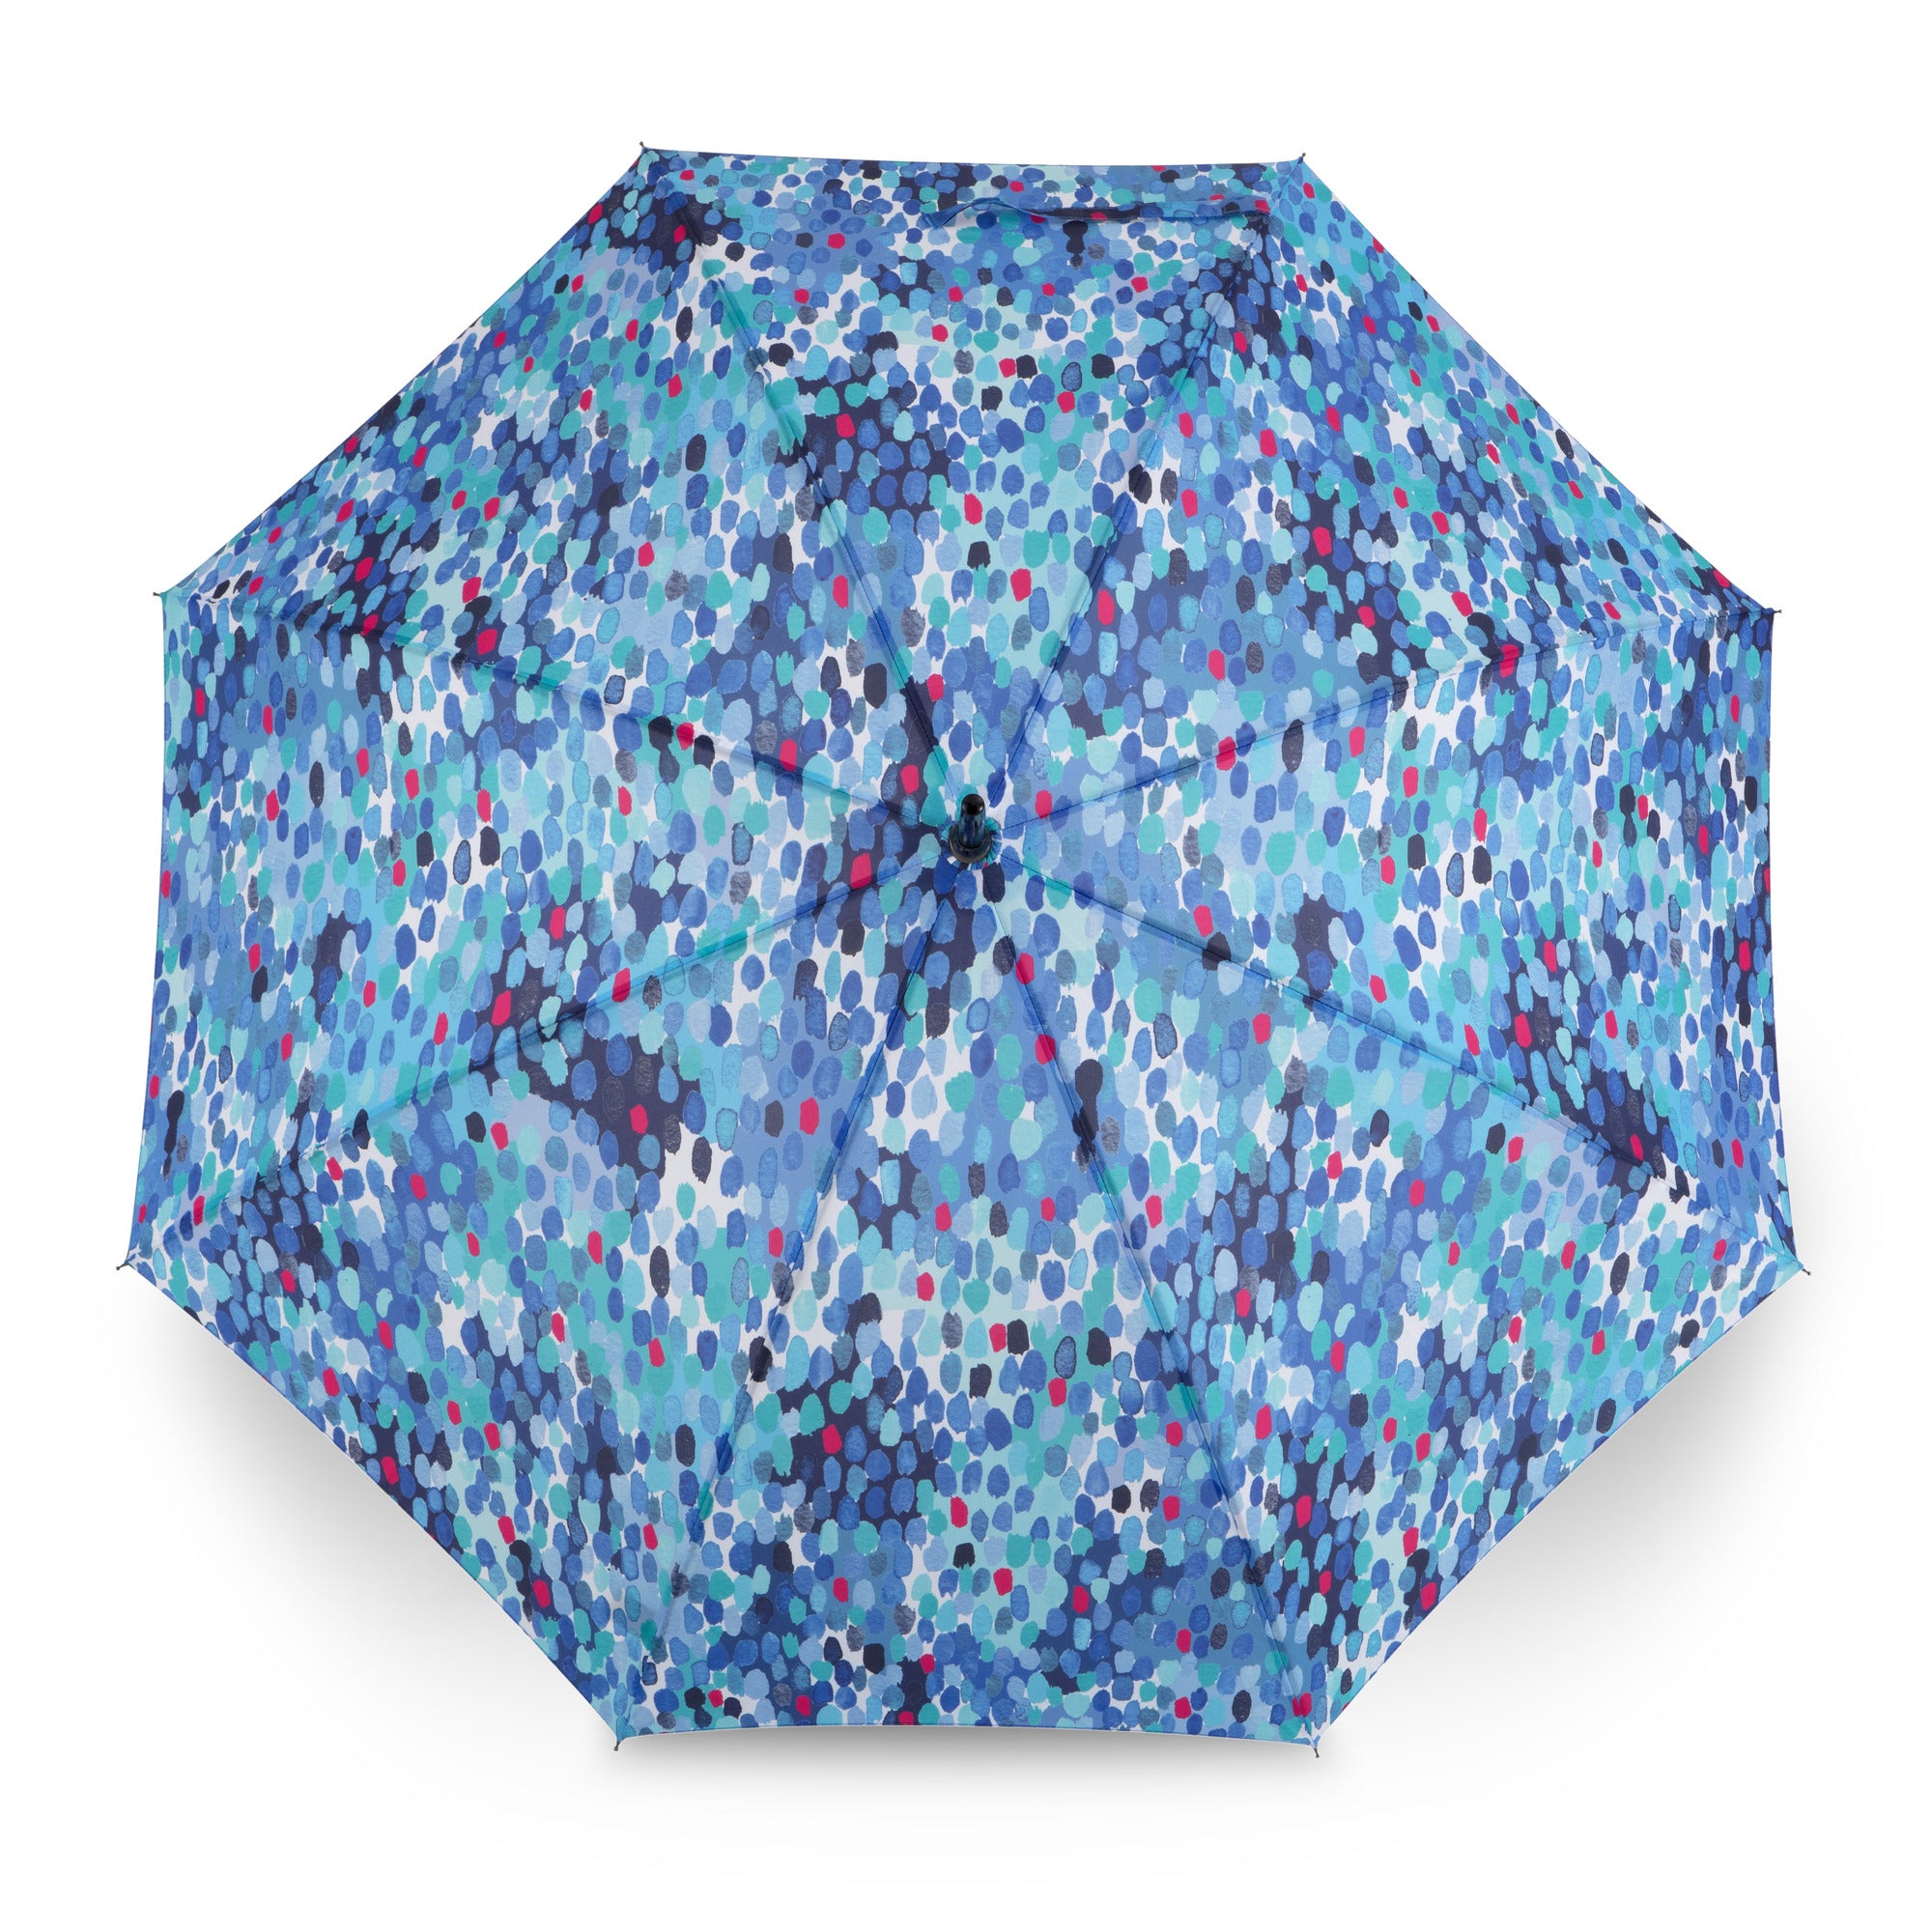 Maxi Art Umbrella Raindrops